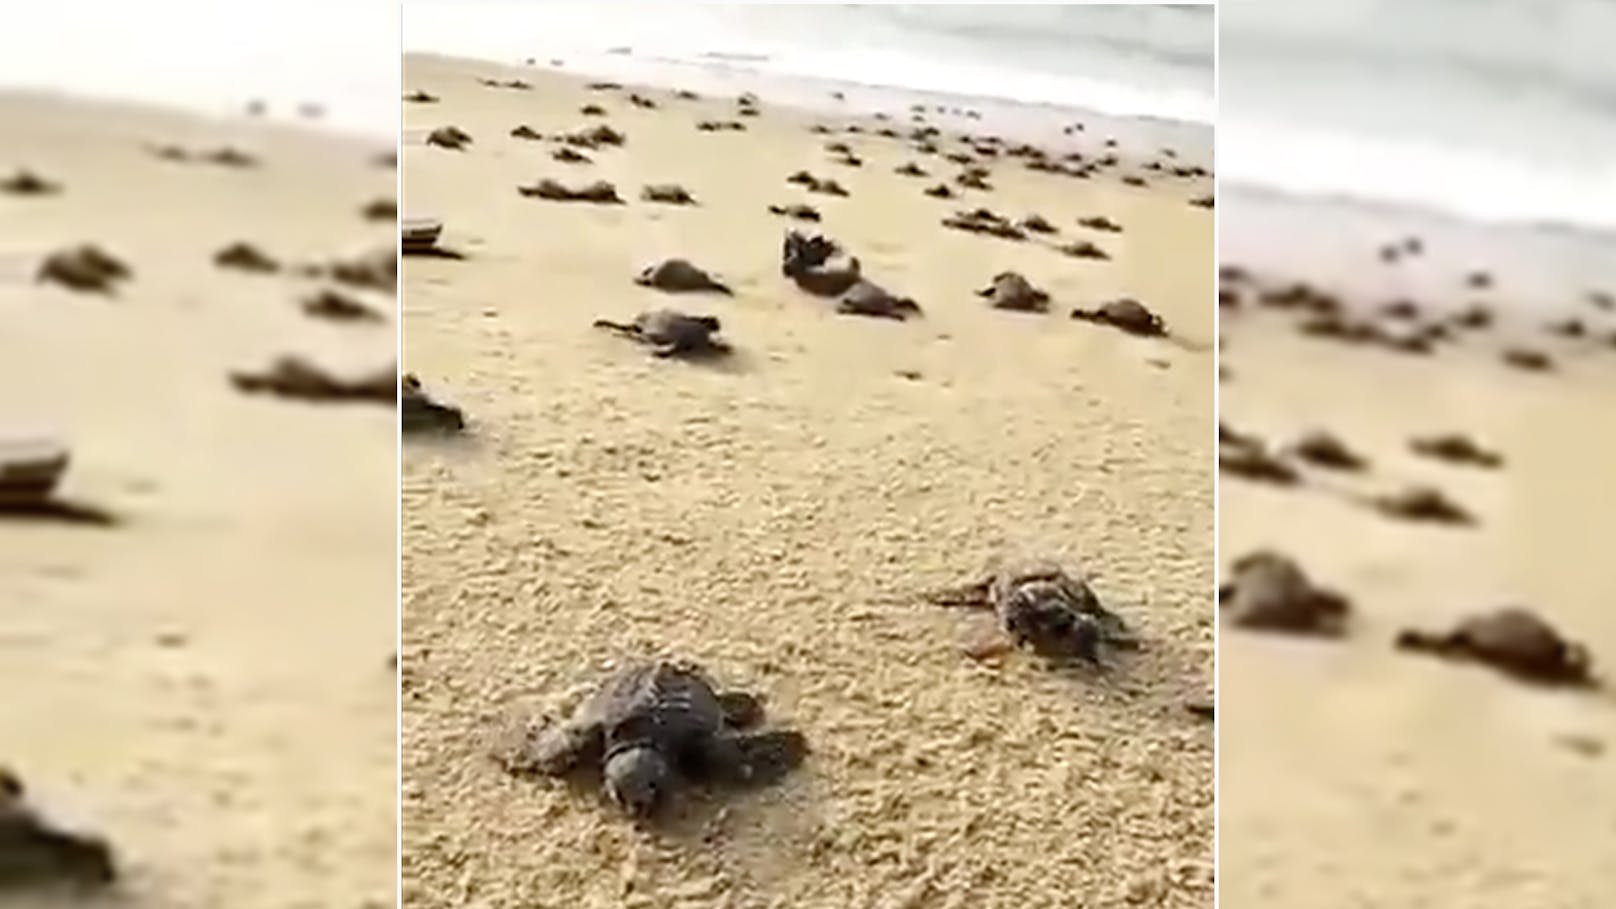 Frisch geschlüpfte Meeresschildkröten an einem menschenleeren Strand in Indien auf dem Weg ins Meer